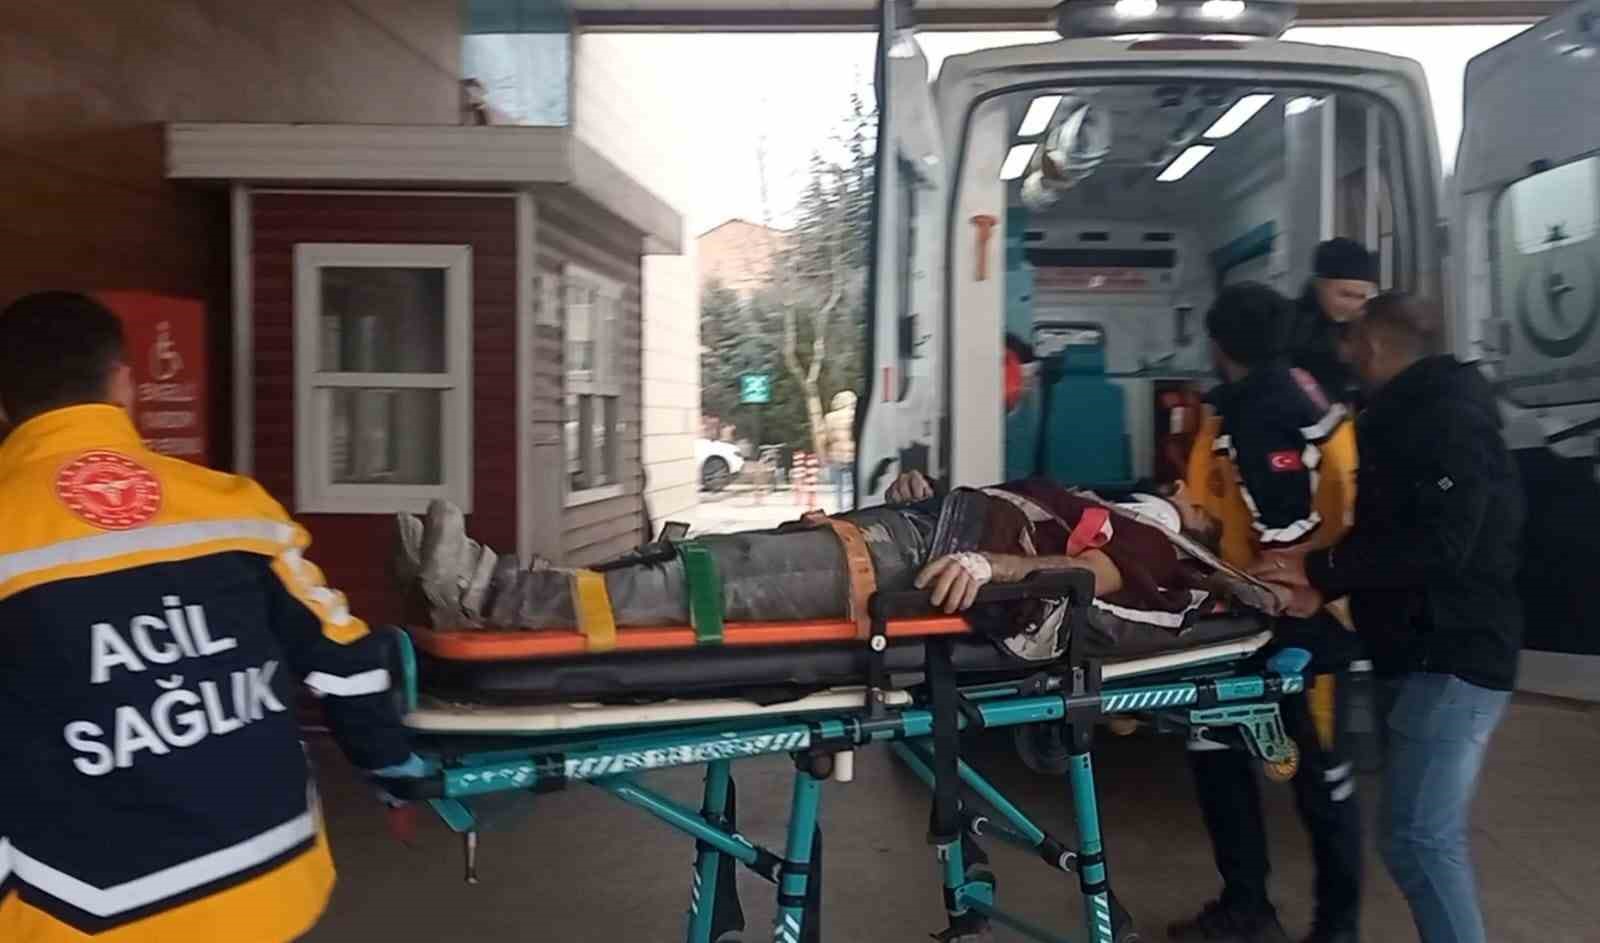 Bursa’da inanılmaz olay...3.kattan ağabeyinin üzerine düştü: 2 yaralı